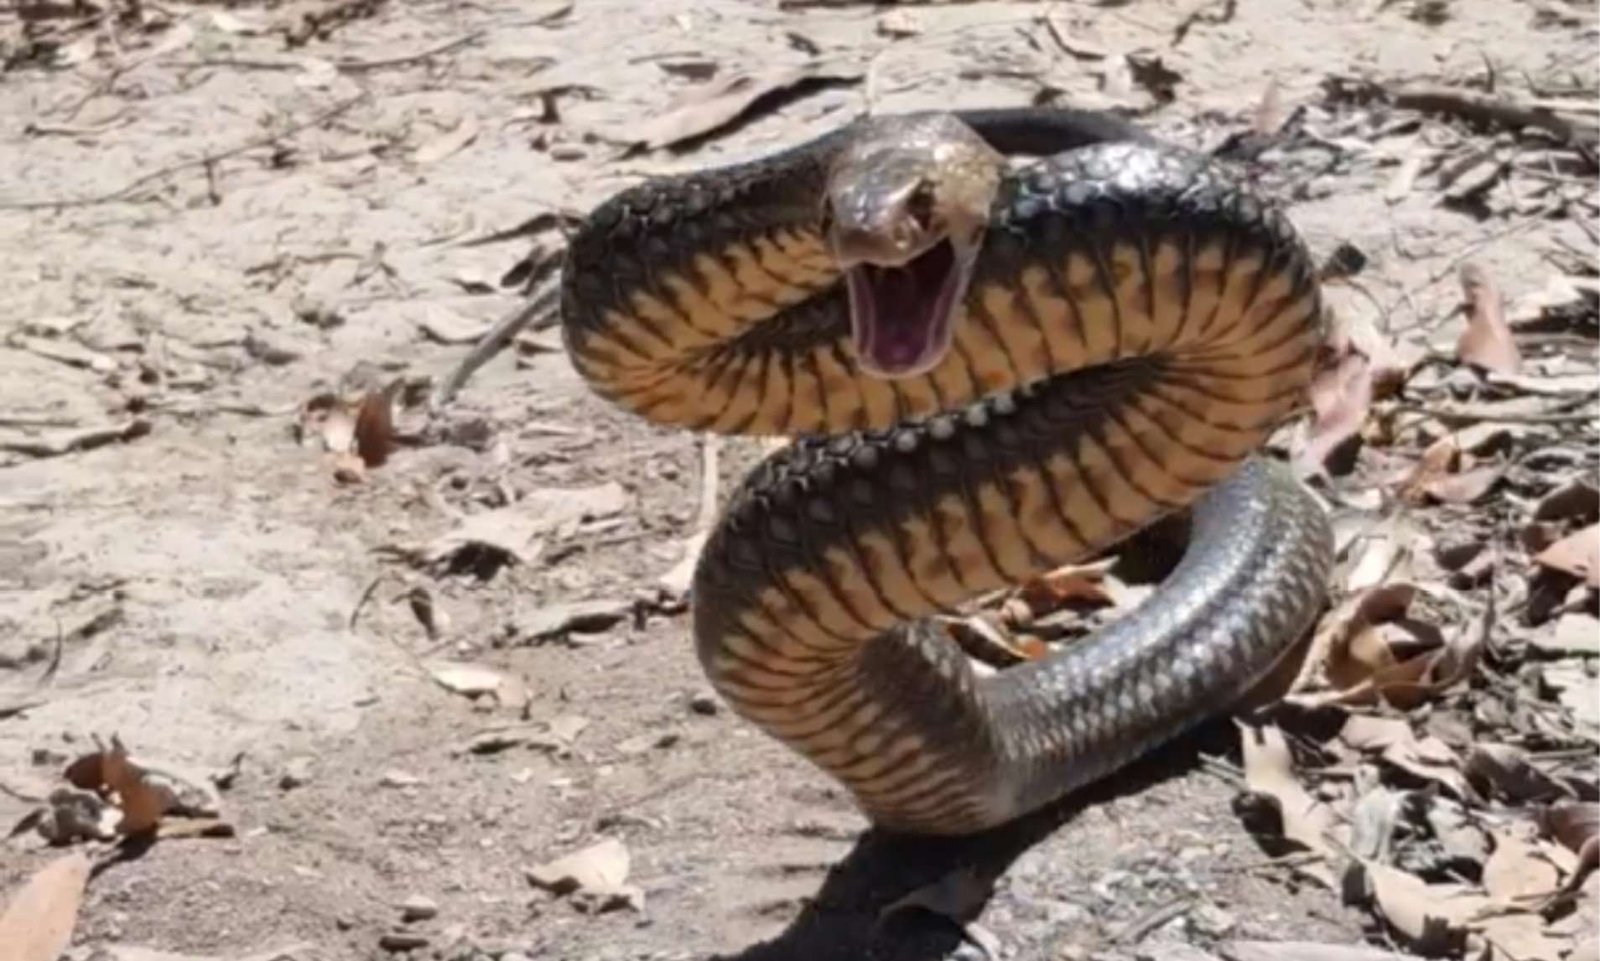 deadly snake